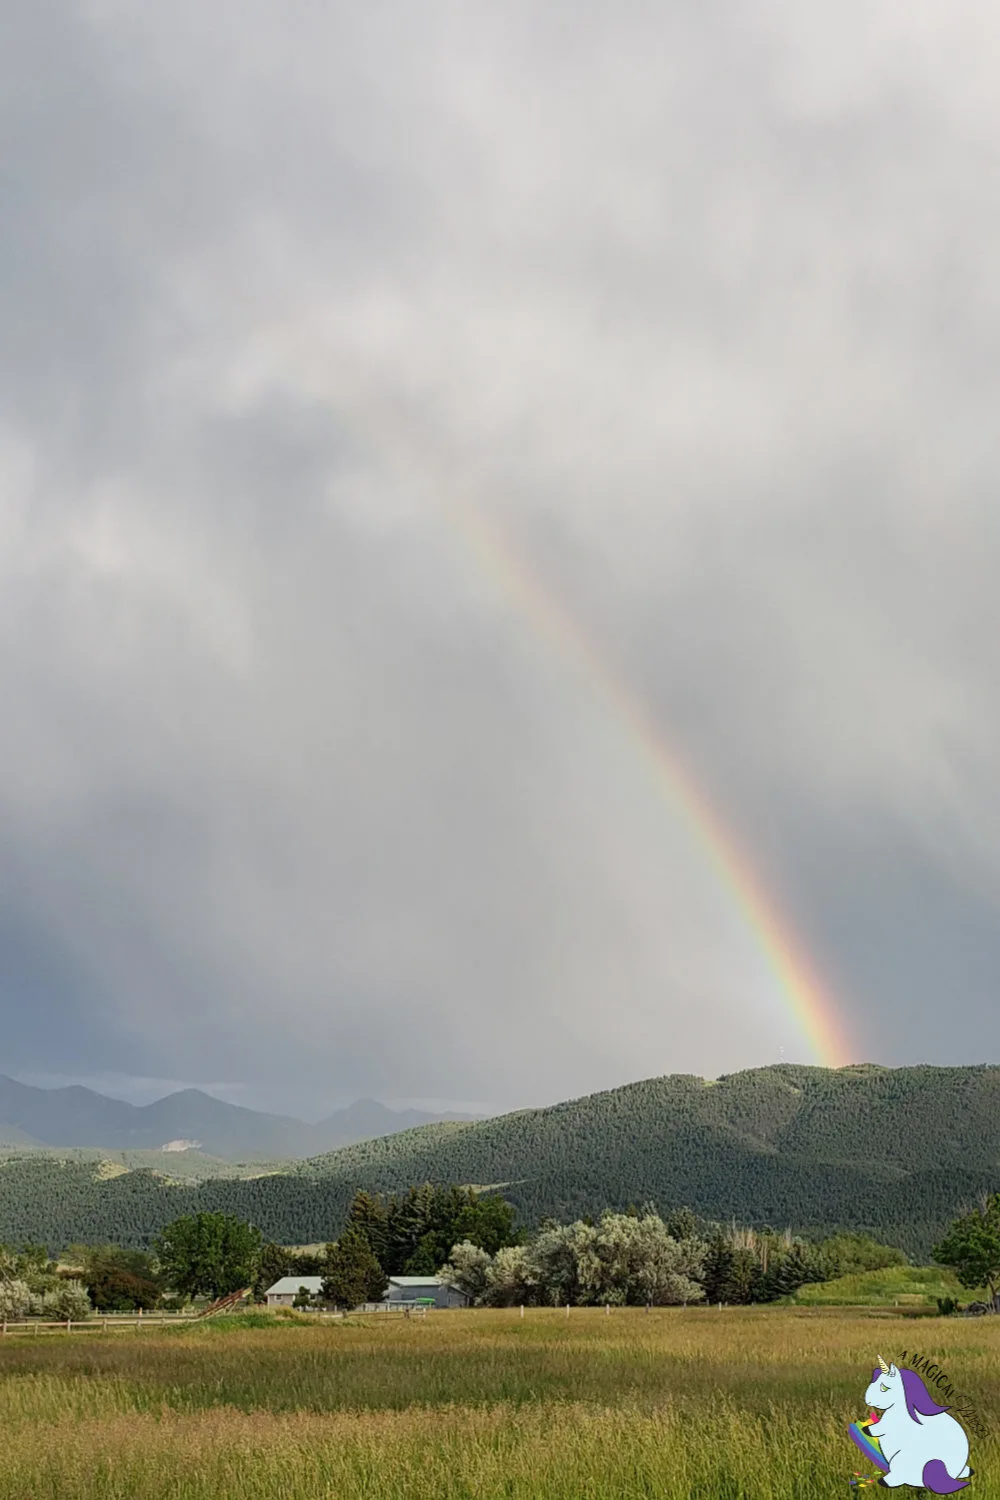 A rainbow over a mountain. 